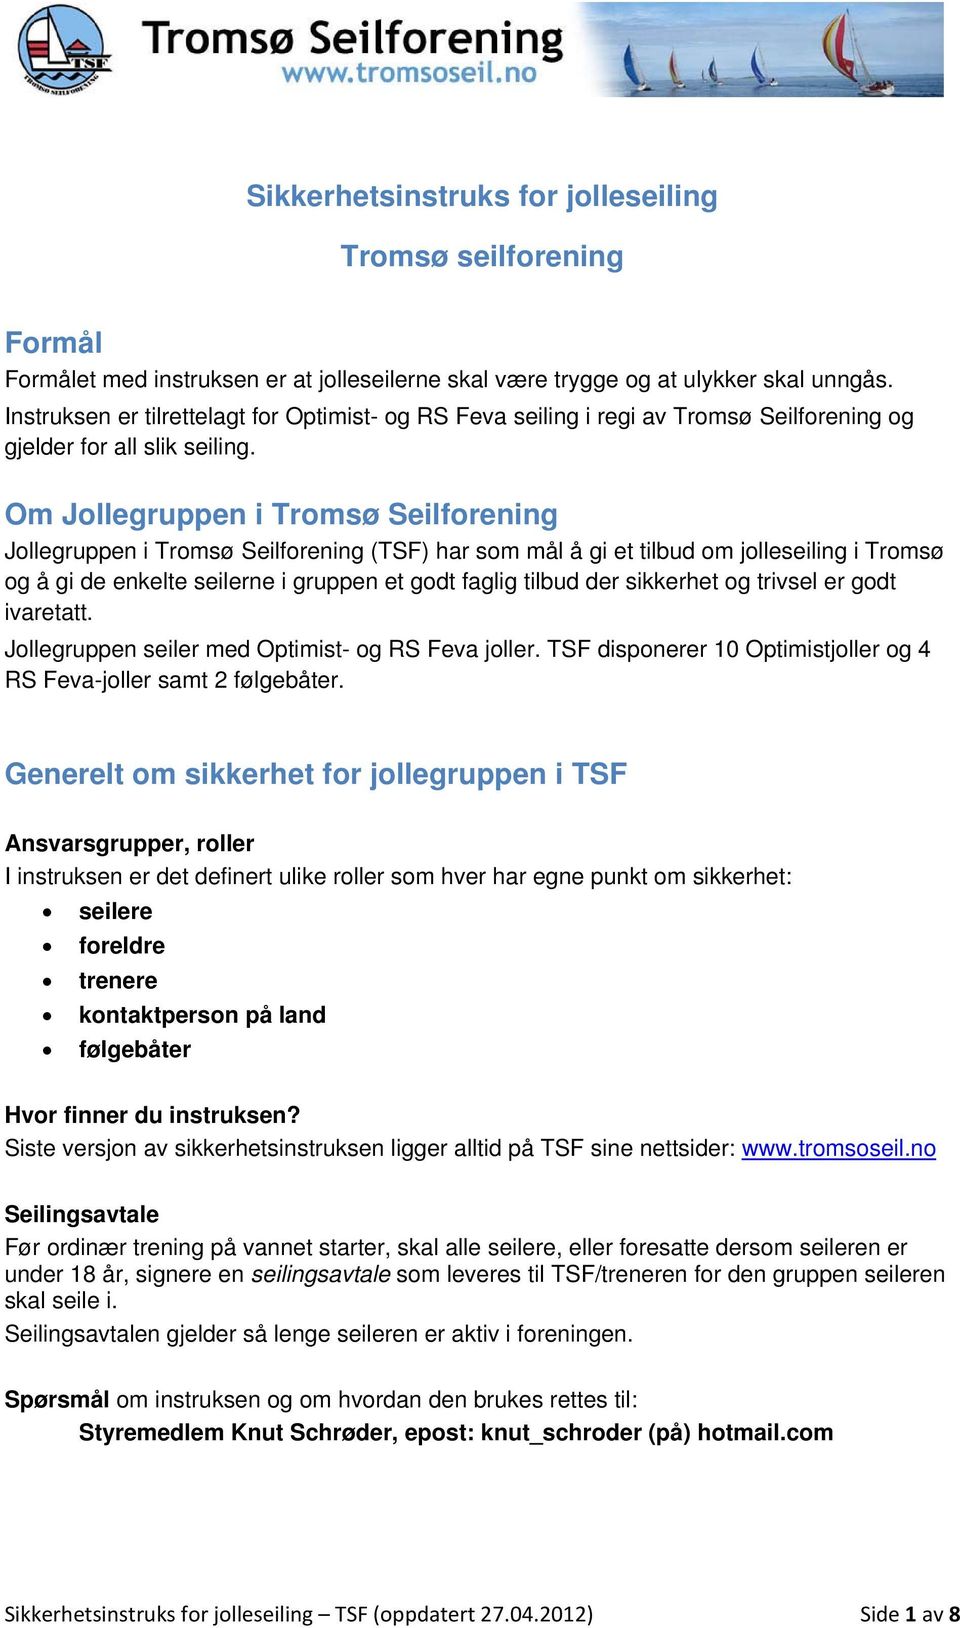 Om Jollegruppen i Tromsø Seilforening Jollegruppen i Tromsø Seilforening (TSF) har som mål å gi et tilbud om jolleseiling i Tromsø og å gi de enkelte seilerne i gruppen et godt faglig tilbud der